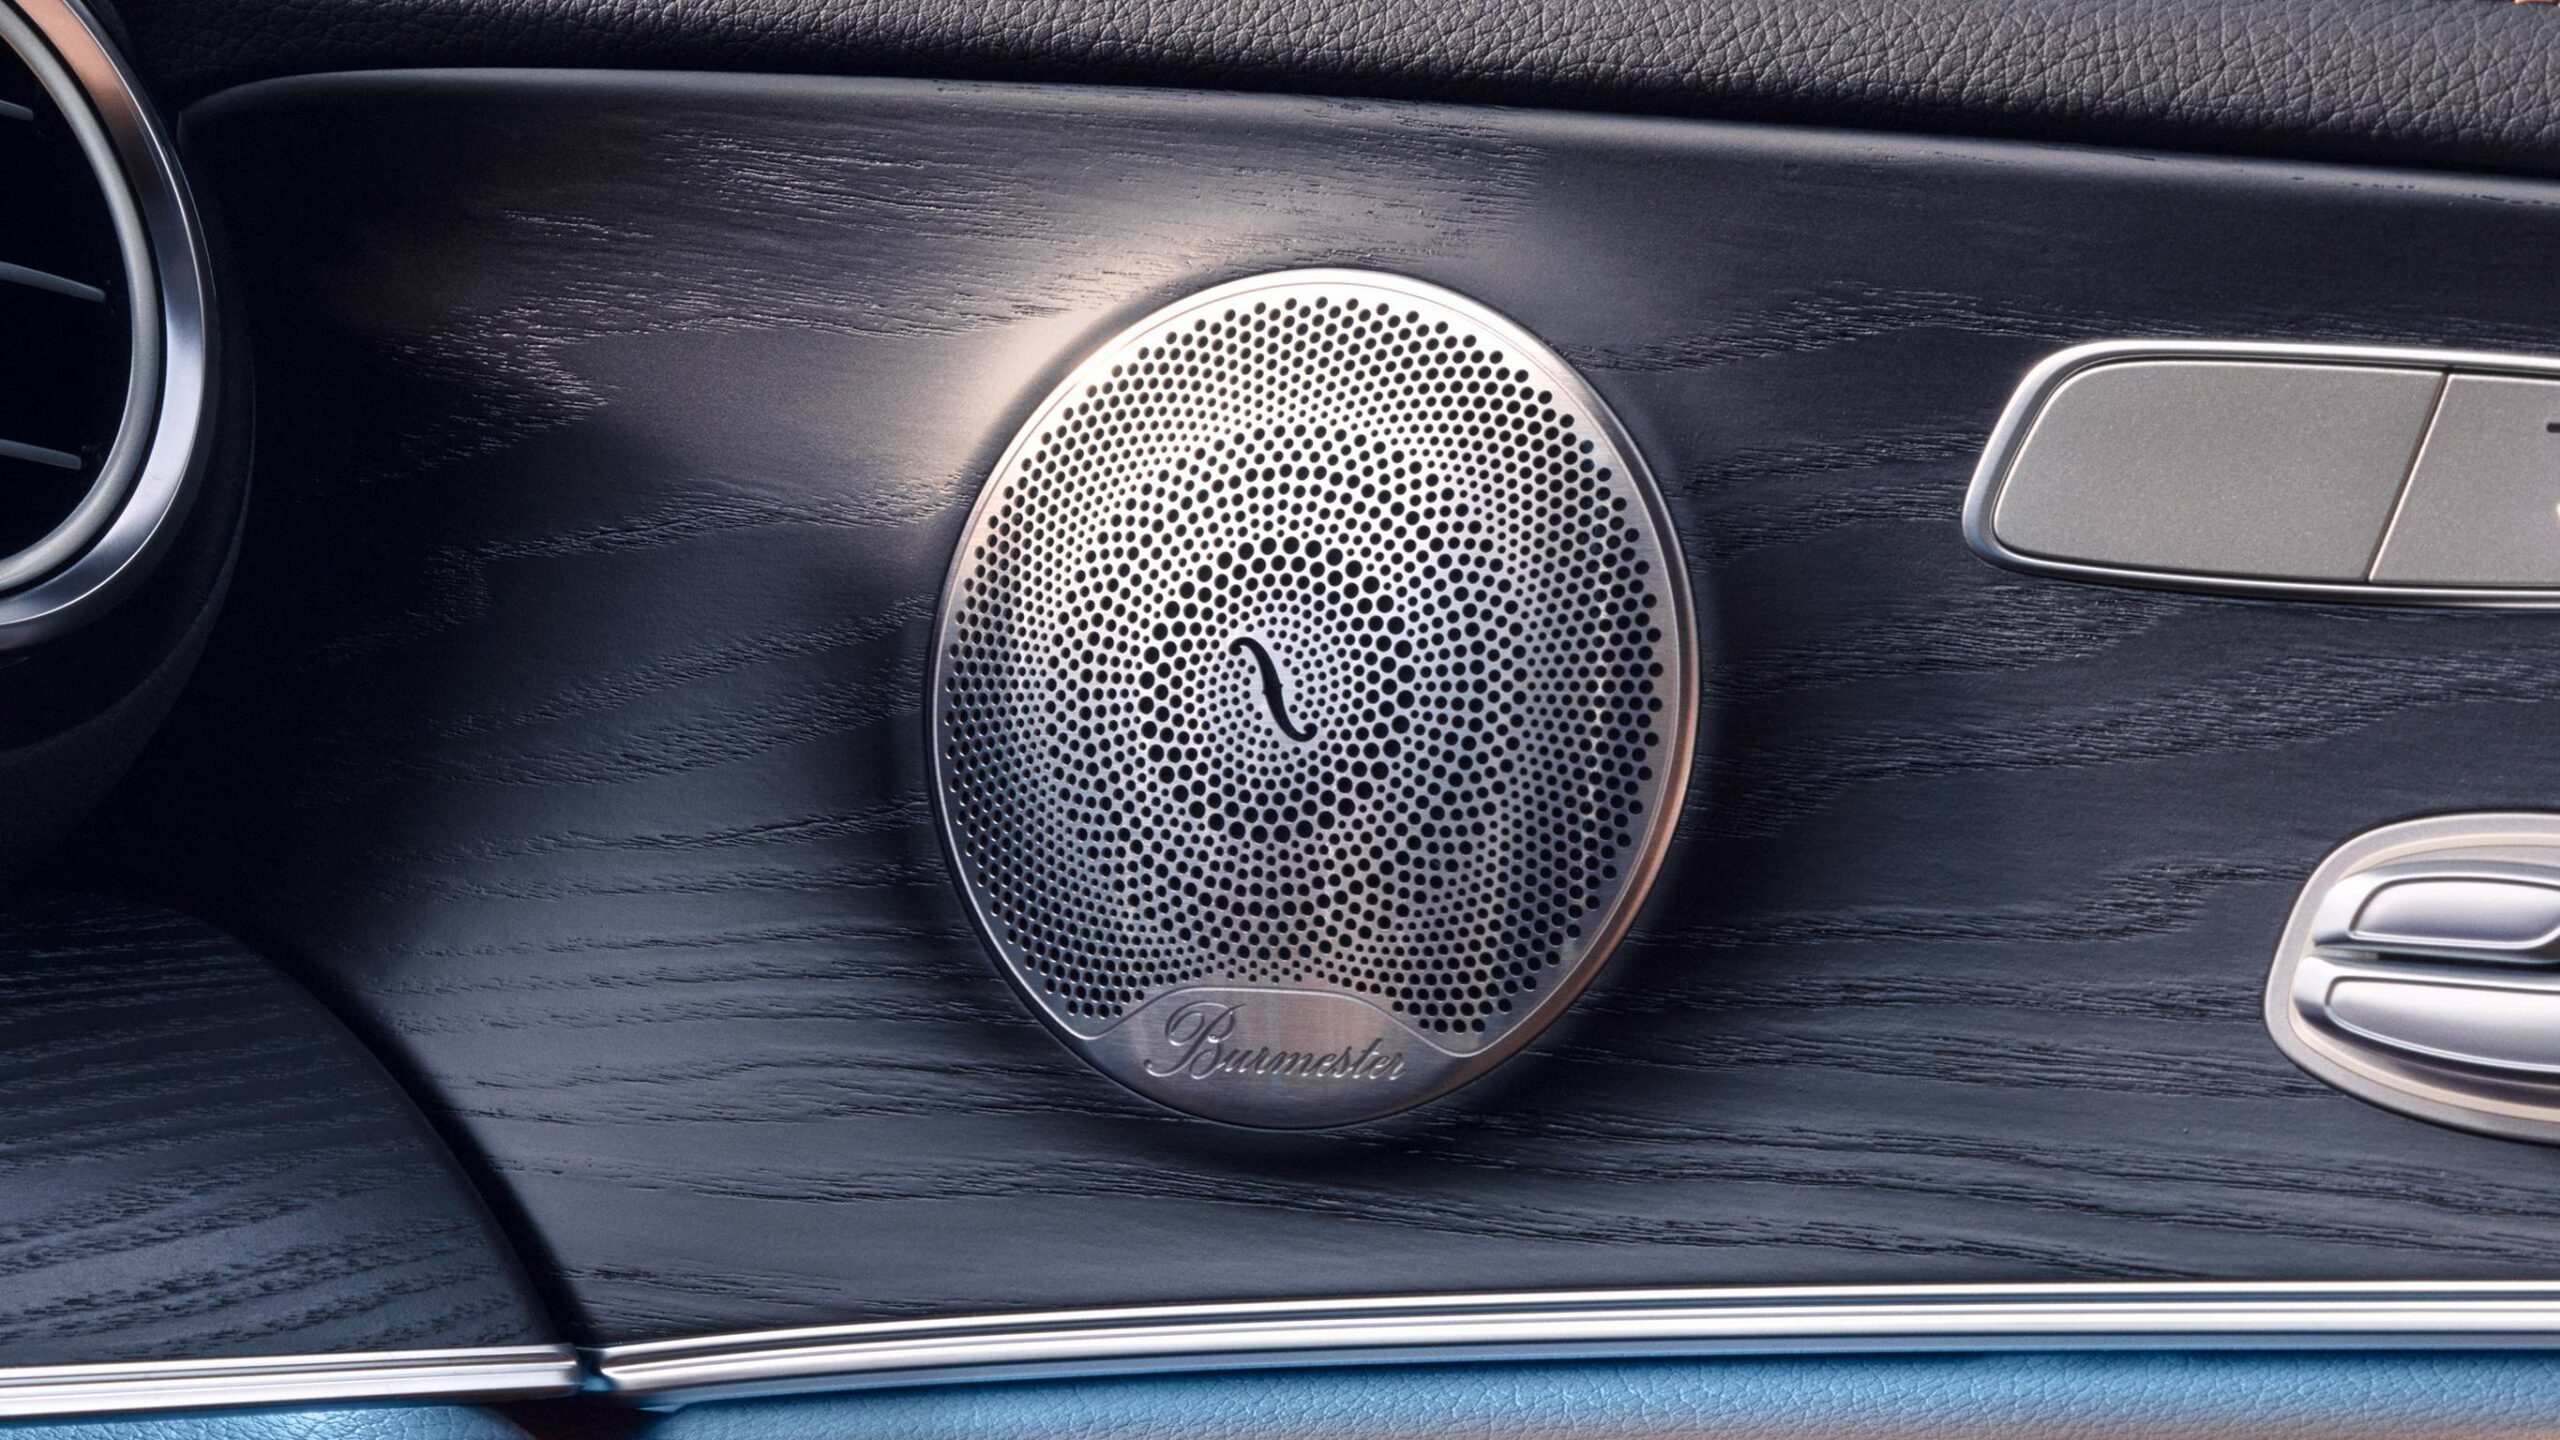 Parlantes de sonido Burmester dentro de la Clase E Sedan de Mercedes-Benz